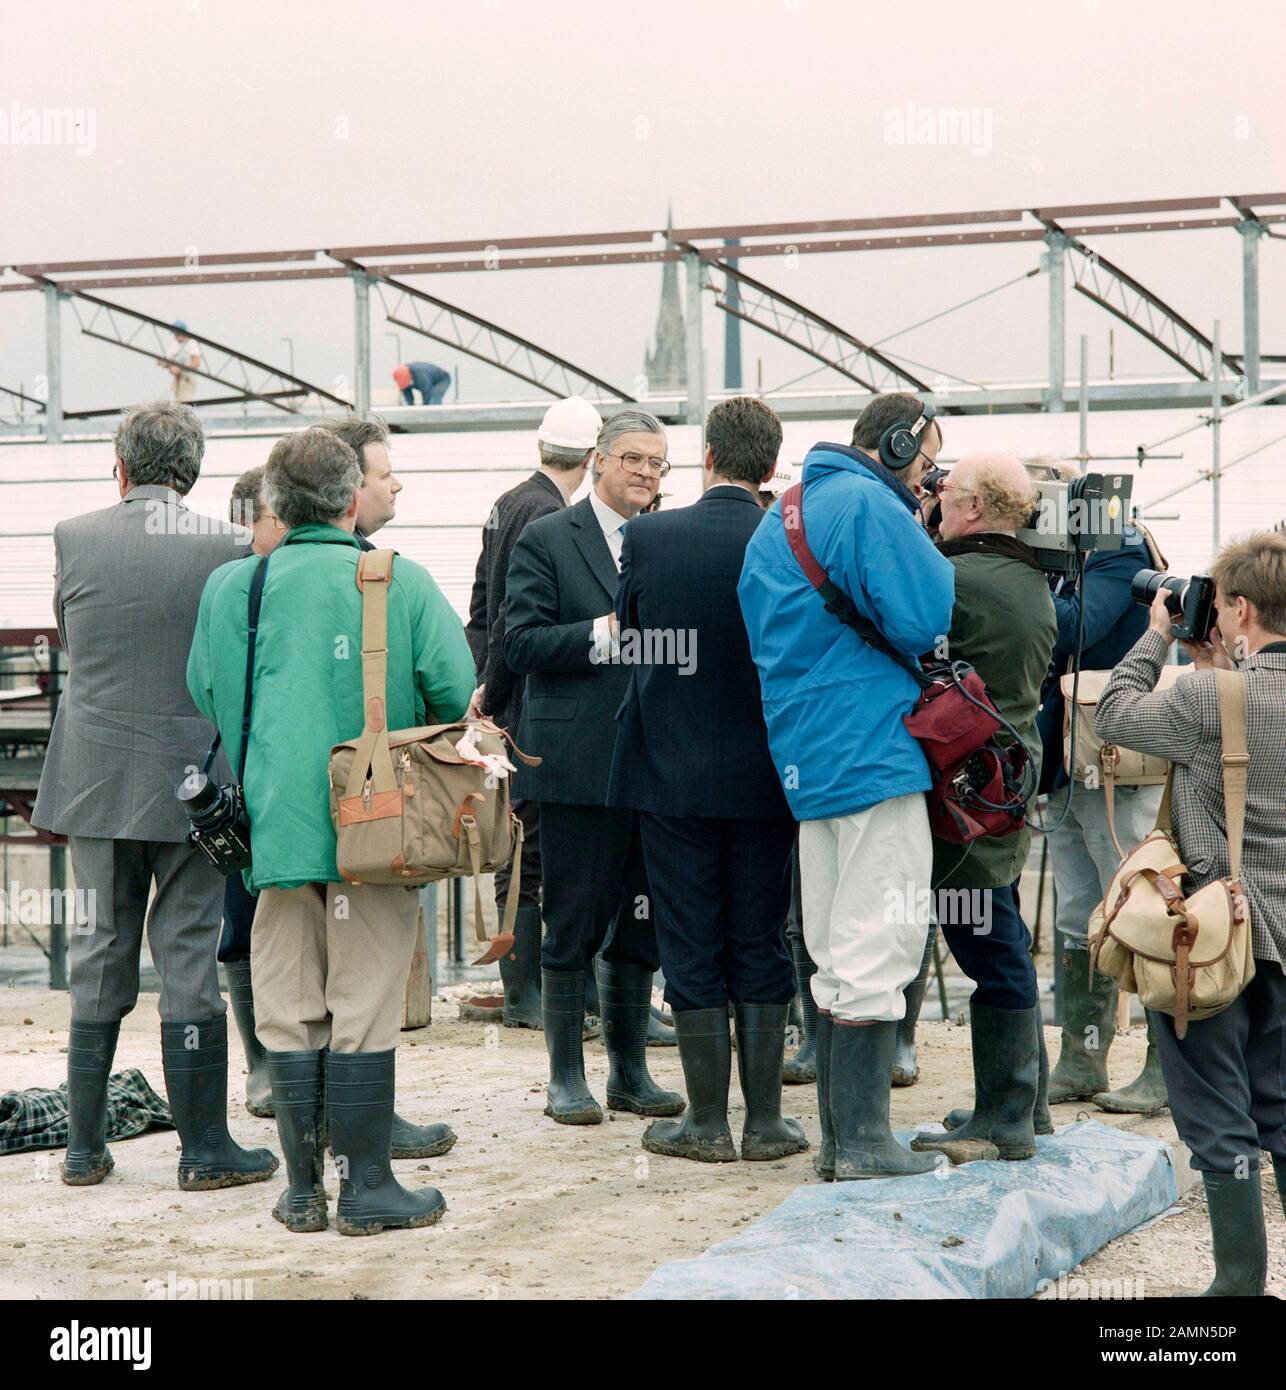 1989 und der konservative Bildungsminister Kenneth Baker, der eine im Bau befindliche Schule in Bradford, West Yorkshire, Nordengland, Großbritannien besucht Stockfoto